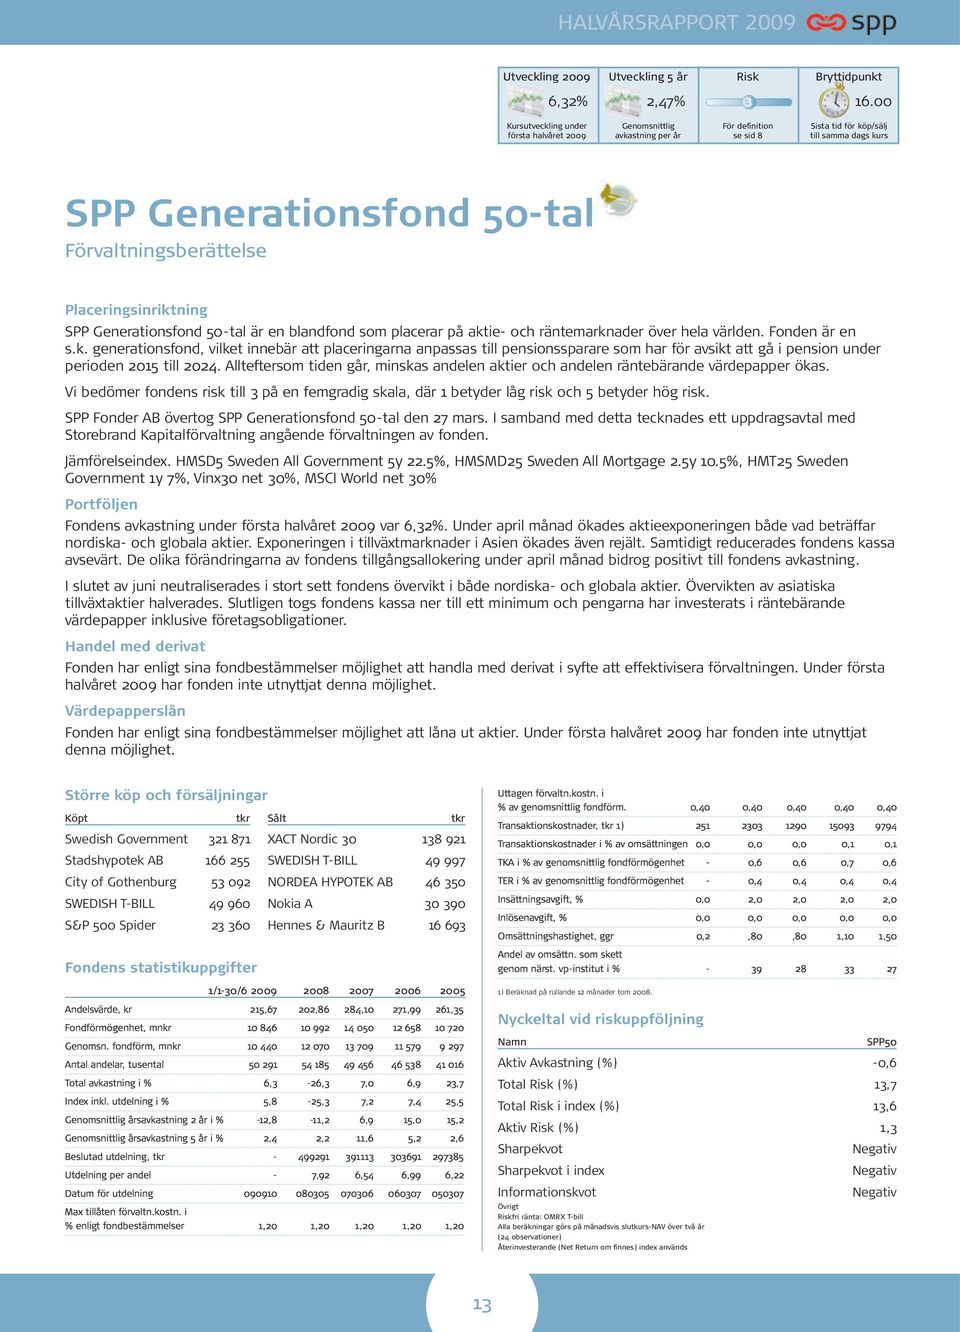 Placeringsinriktning SPP Generationsfond 50-tal är en blandfond som placerar på aktie- och räntemarknader över hela världen. Fonden är en s.k. generationsfond, vilket innebär att placeringarna anpassas till pensionssparare som har för avsikt att gå i pension under perioden 2015 till 2024.